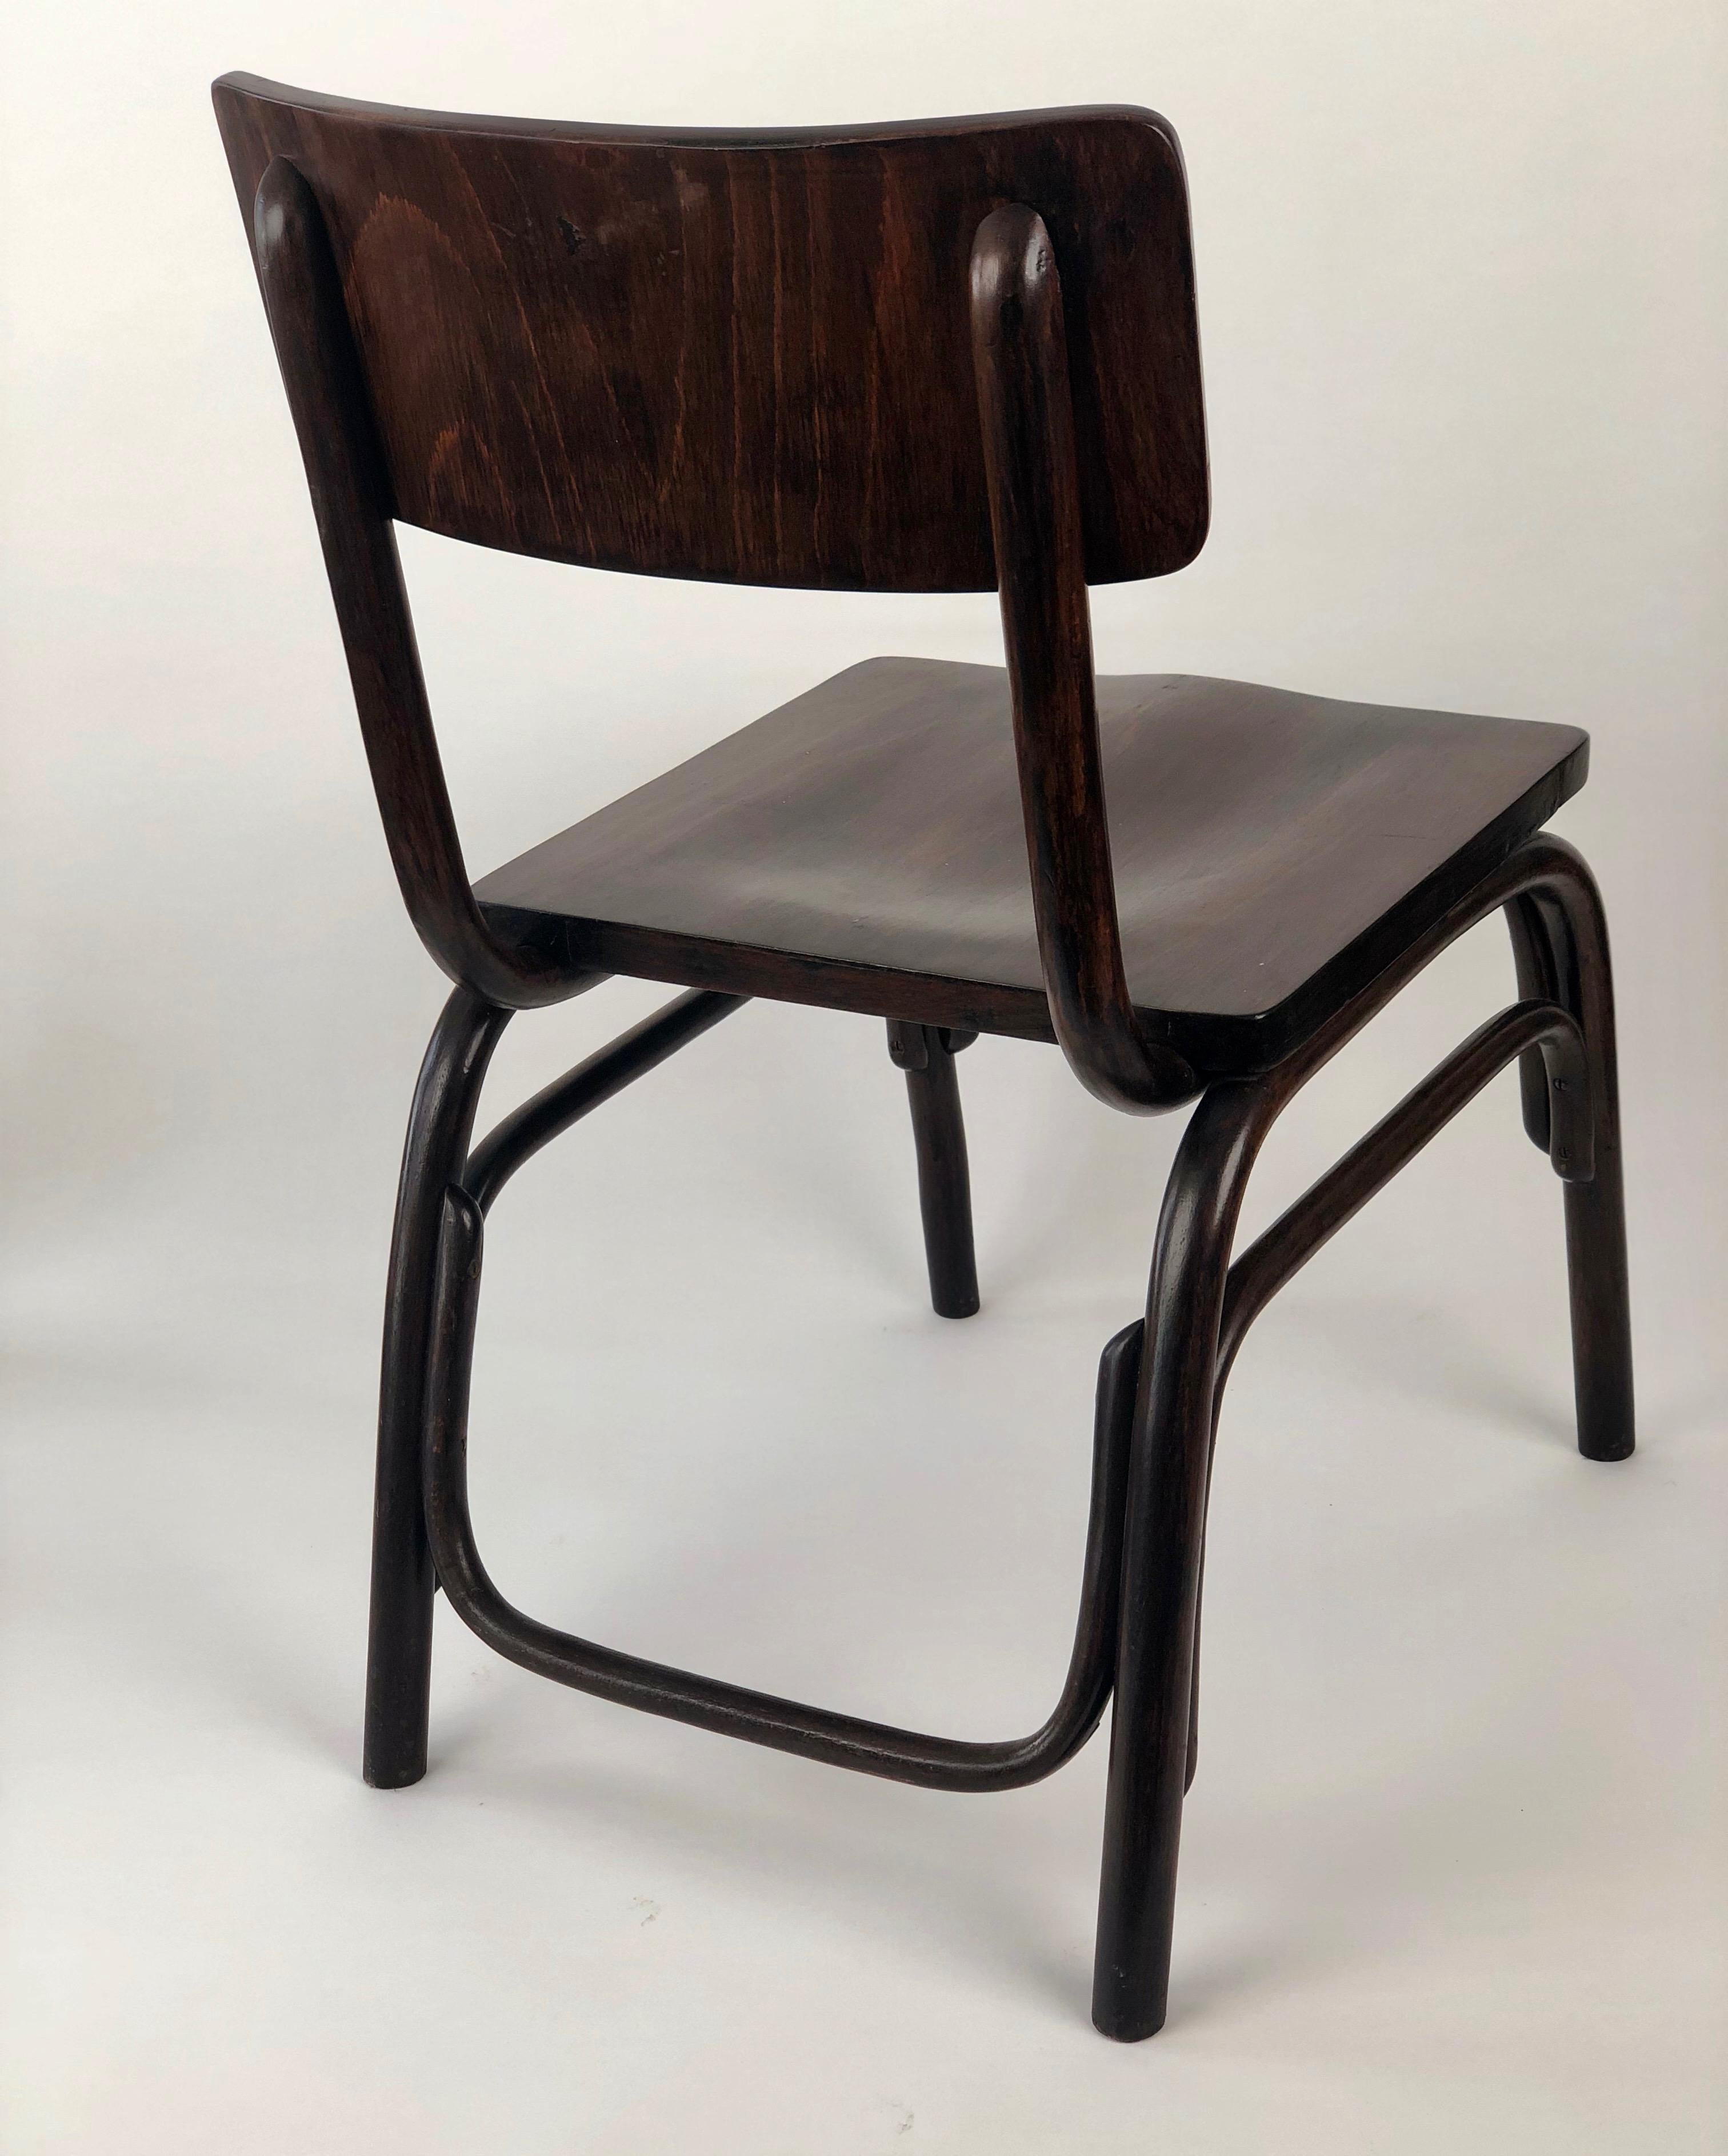 Der Architekt und Designer Ferdinand Kramer entwarf den Stuhl B403 im Jahr 1927 für Thonet. 
Es wurde während des Baus des Neuen Frankfurts entwickelt und zunächst in der beruflichen Bildung eingesetzt.
Im Gegensatz zu den Schreibtischstühlen und